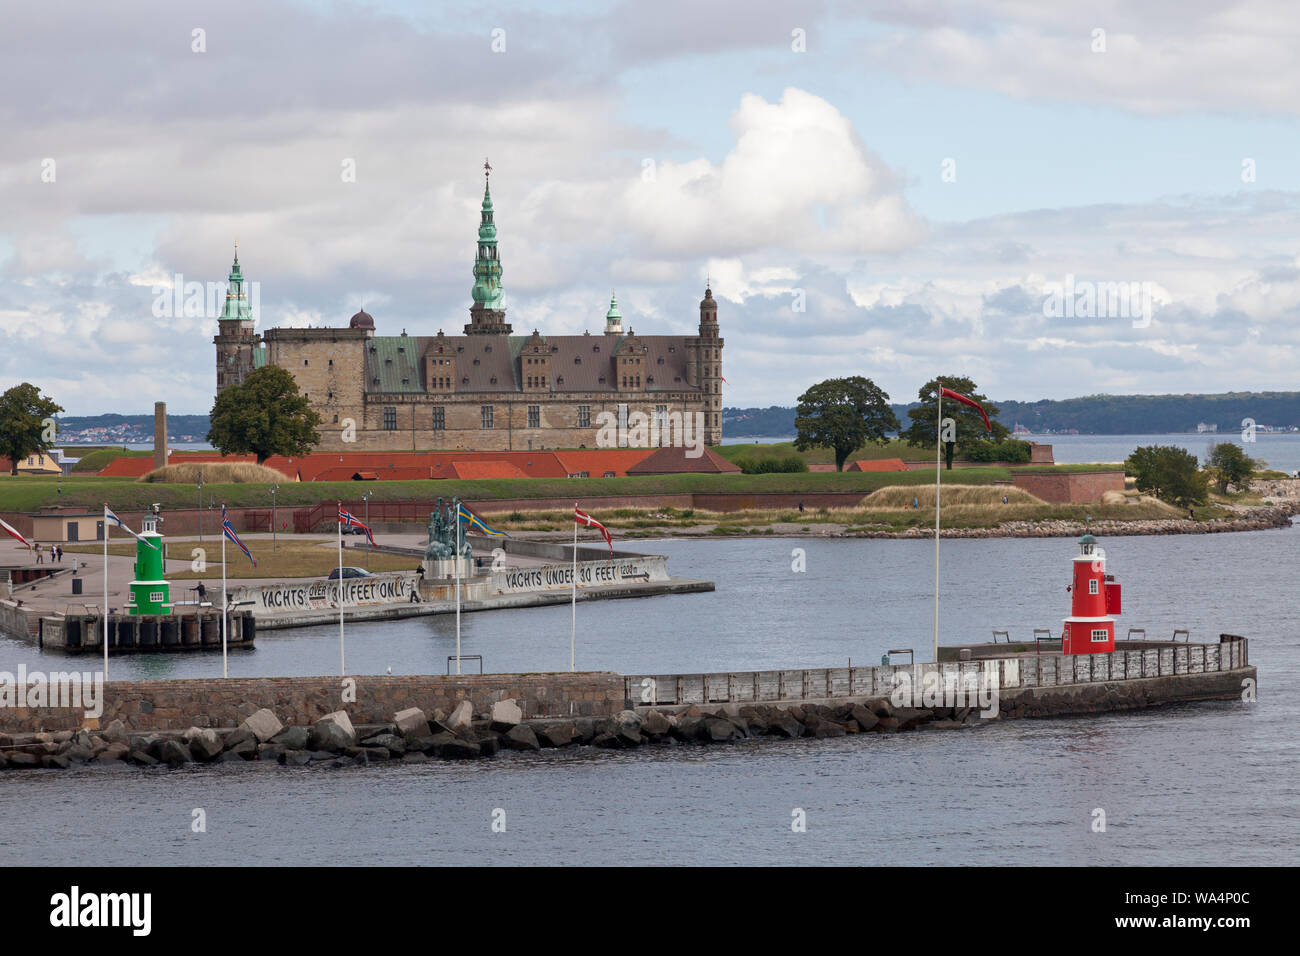 Castello di Kronborg sul punto di Kronborg presso la Sound Øresund, ingresso a Elsinore, Helsingør, Porto. Svezia in lontananza. Una mattina d'estate. Foto Stock